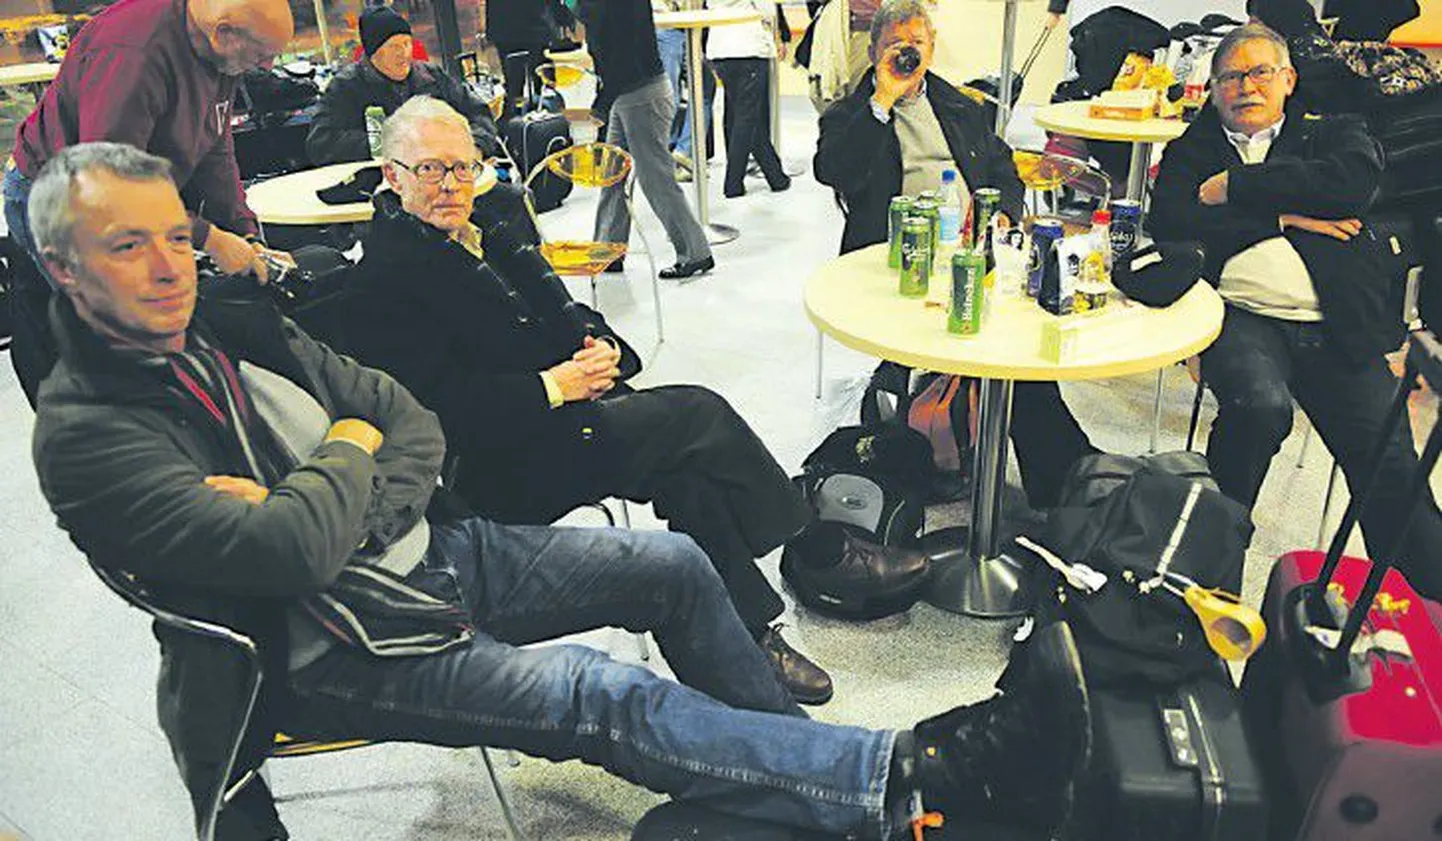 Во время снежной метели, бушевавшей год назад, мужской хор Норвегии провел в Таллиннском аэропорту десять часов  в ожидании вылета. Тем не менее, за задержку авиарейса, связанного с непогодой, компенсация не положена.